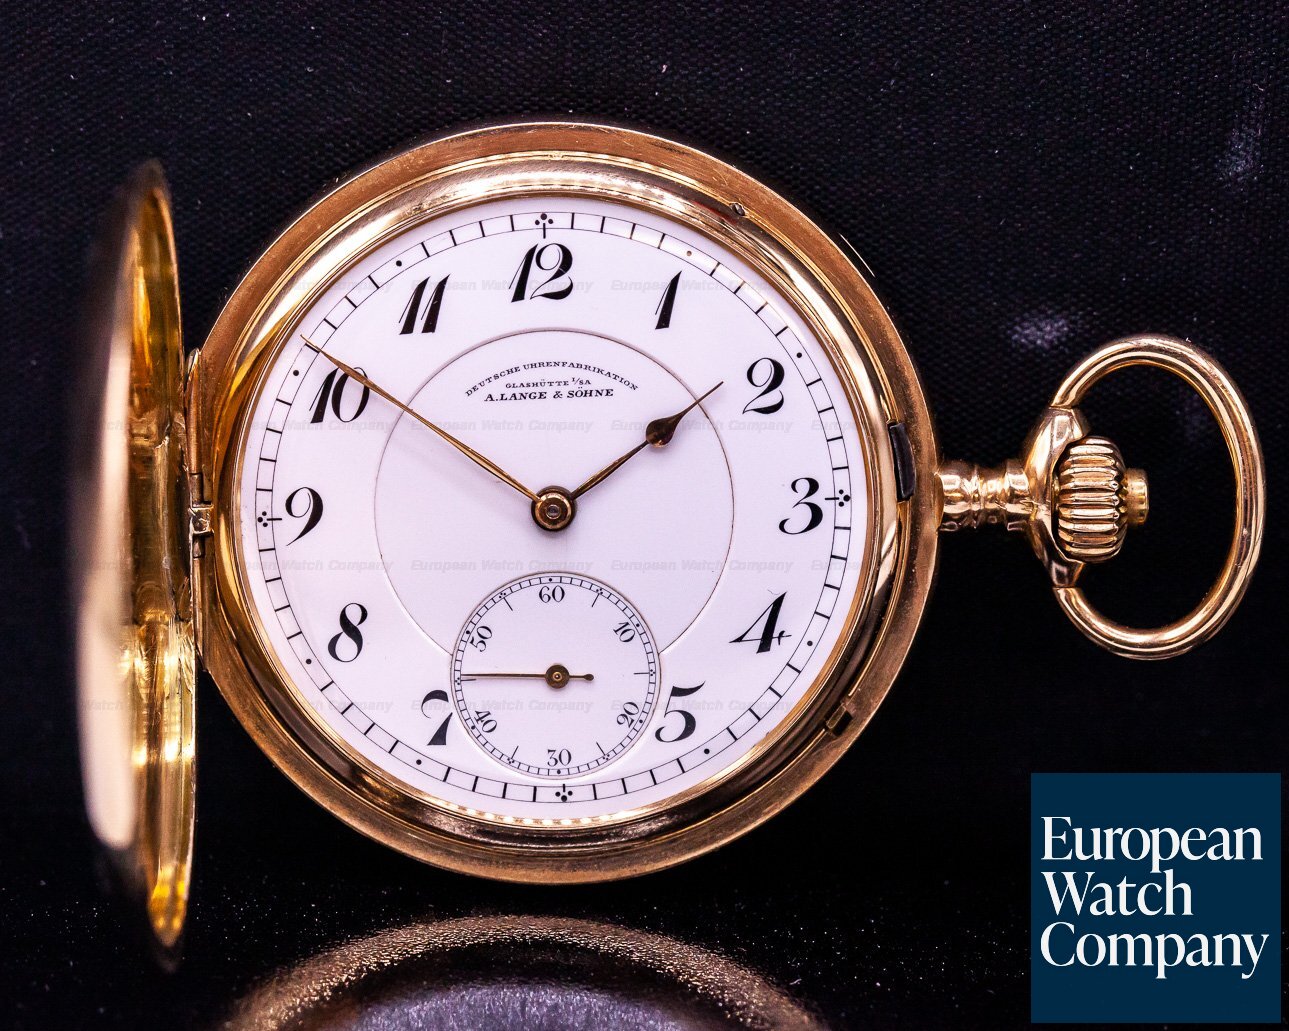 A. Lange and Sohne A. Lange & Sohne 14K rose gold vintage pocket watch Ref. 